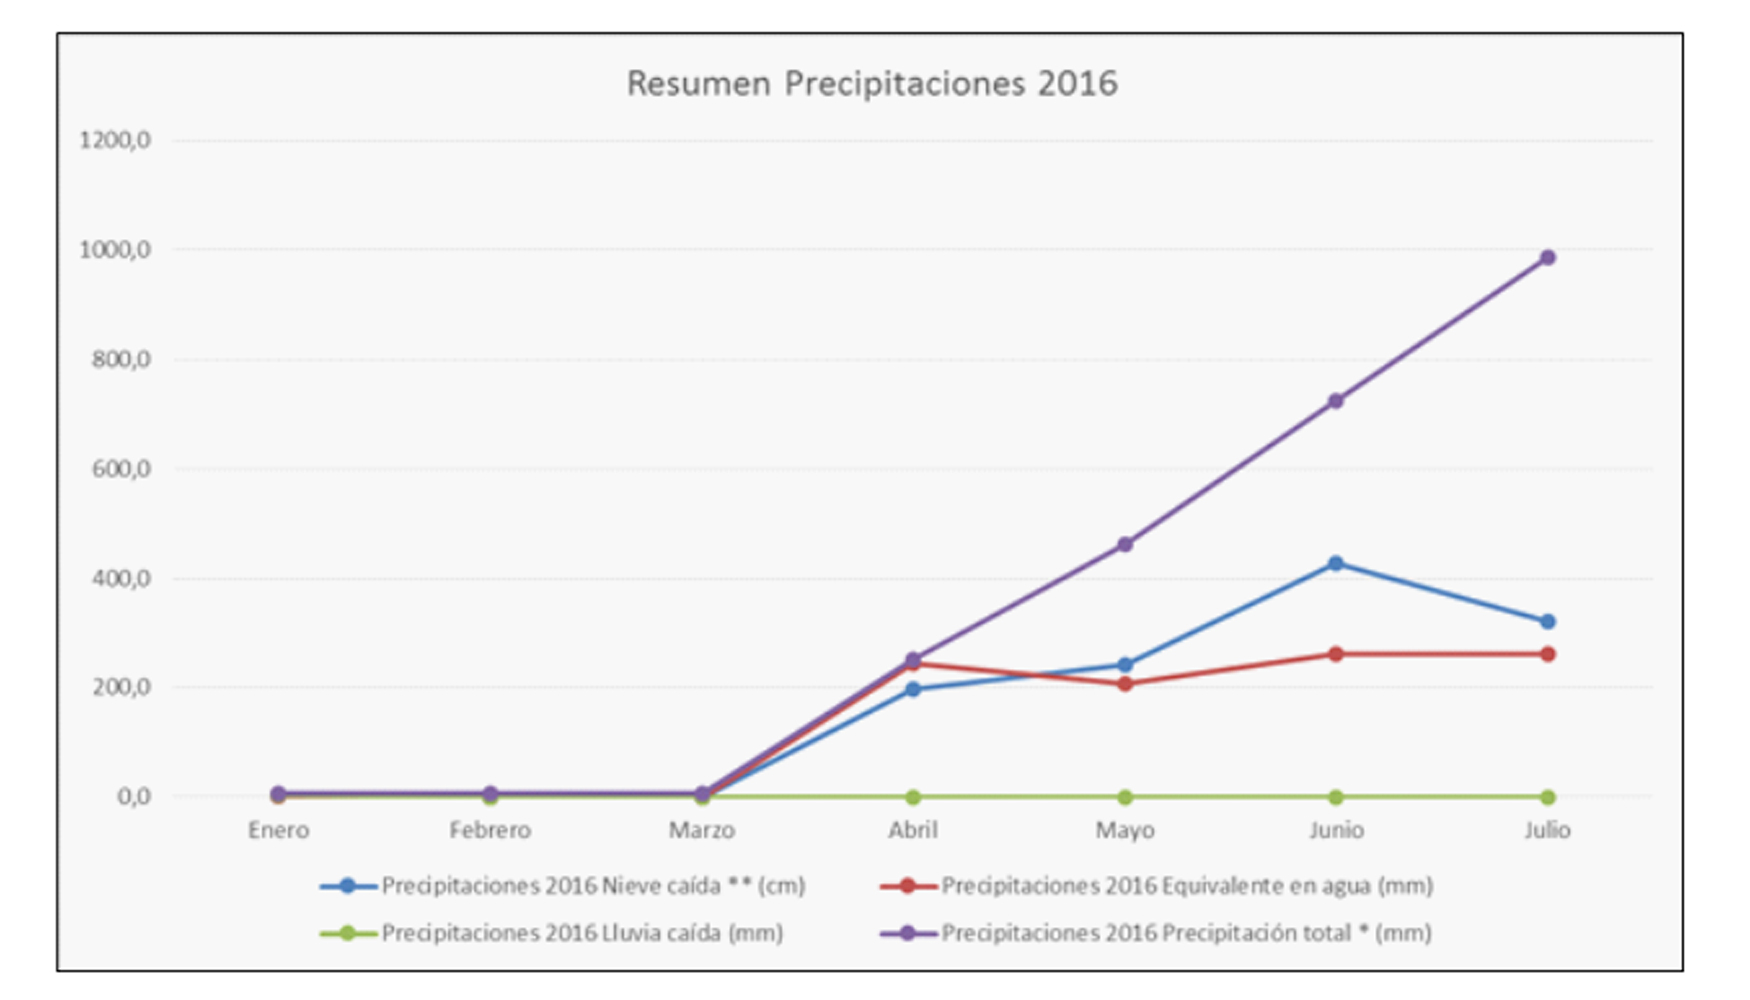 Resumen precipitaciones en el ao 2016